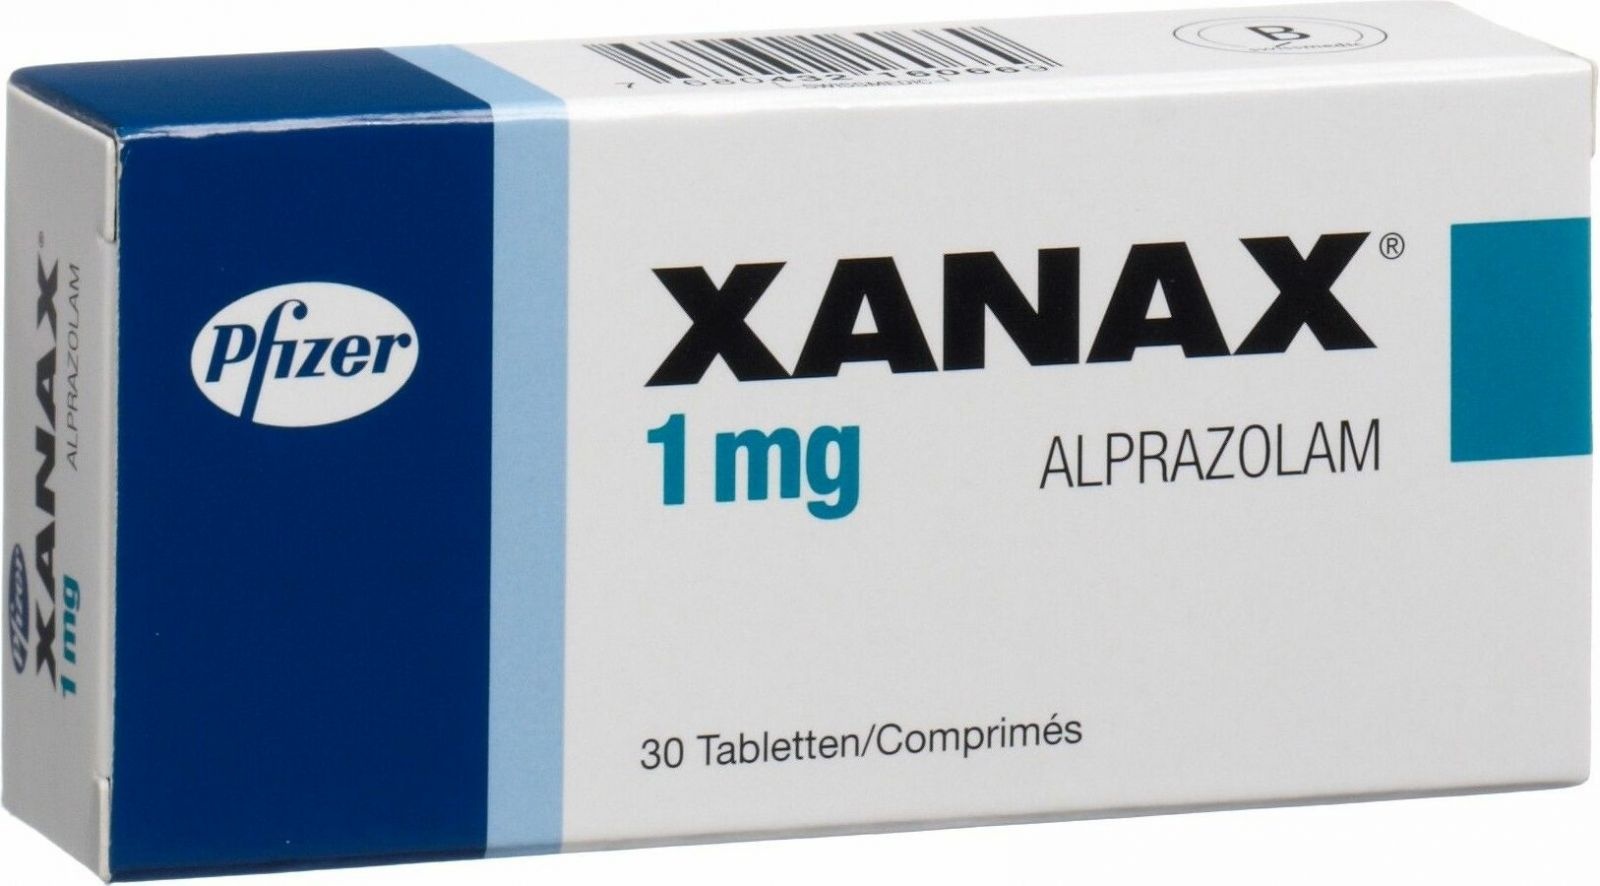 Xanax 1 MG  kopen zonder recept met iDeal.  Medicijnen online betrouwbaar zonder bitcoins bestellen bij apotheek met goede ervaringen - Nederland en België 